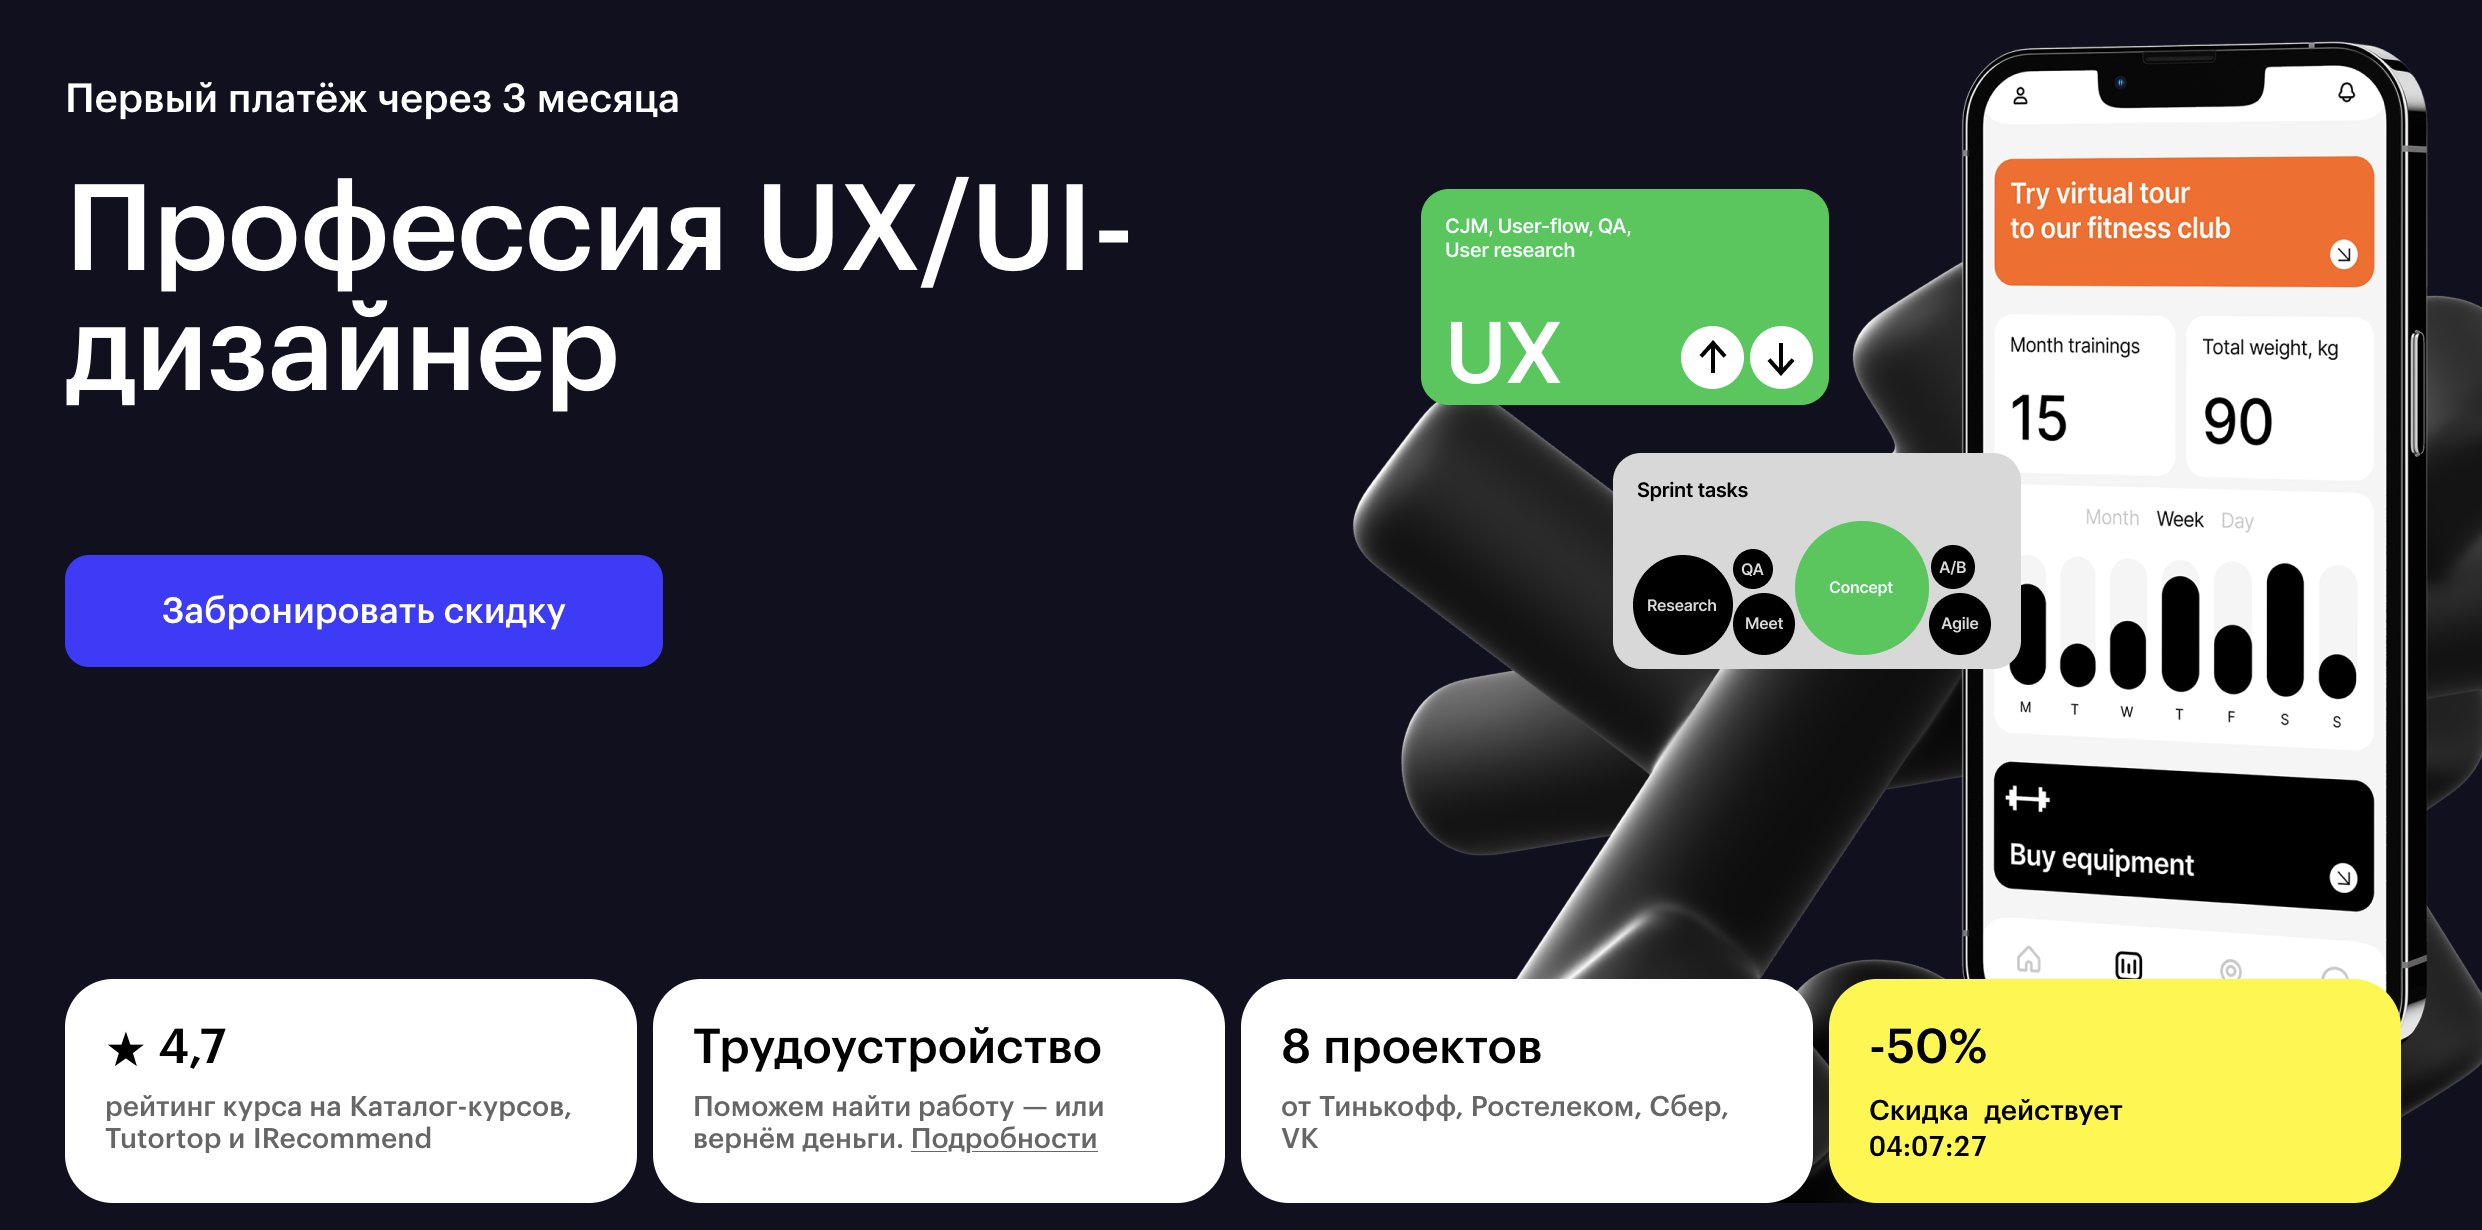 “Профессия UX/UI-дизайнер” от Skillbox